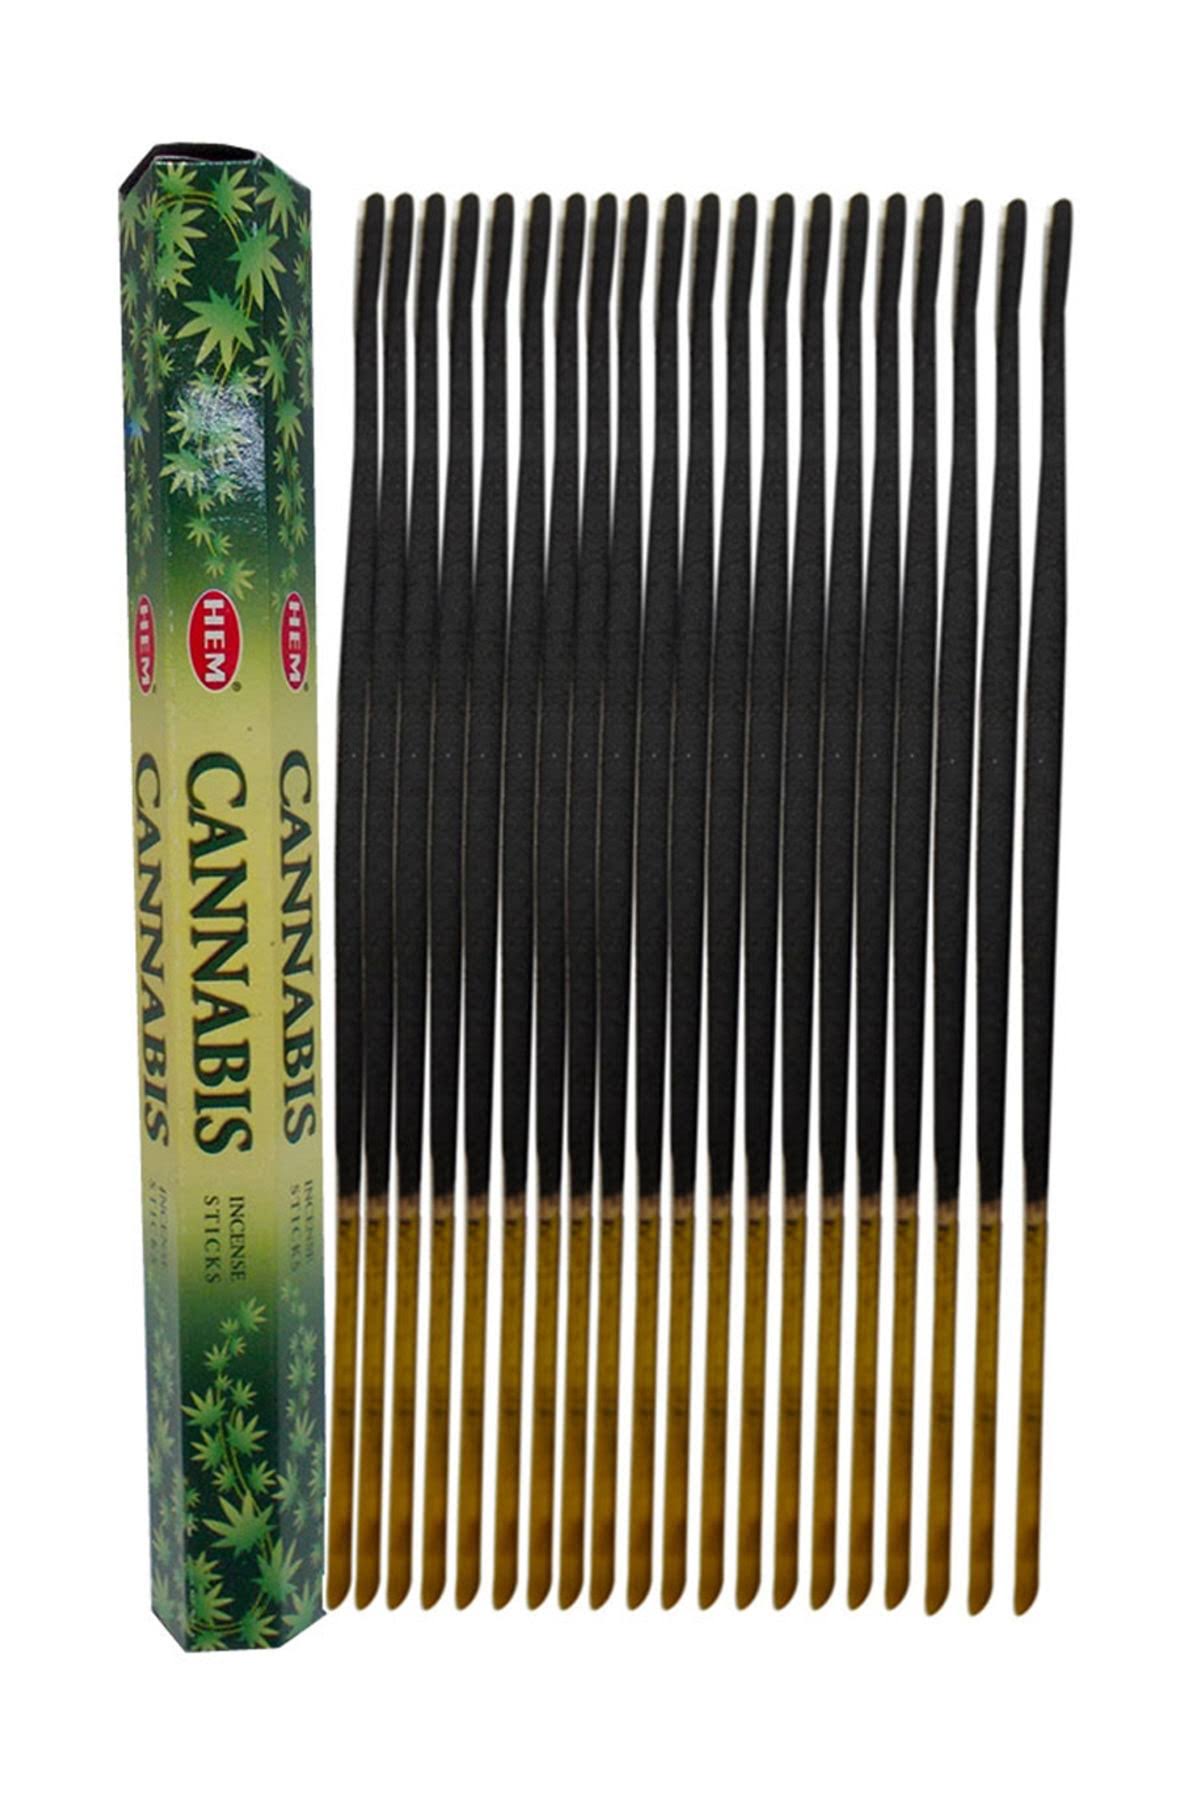 Hem Incense Sticks - Cannabis